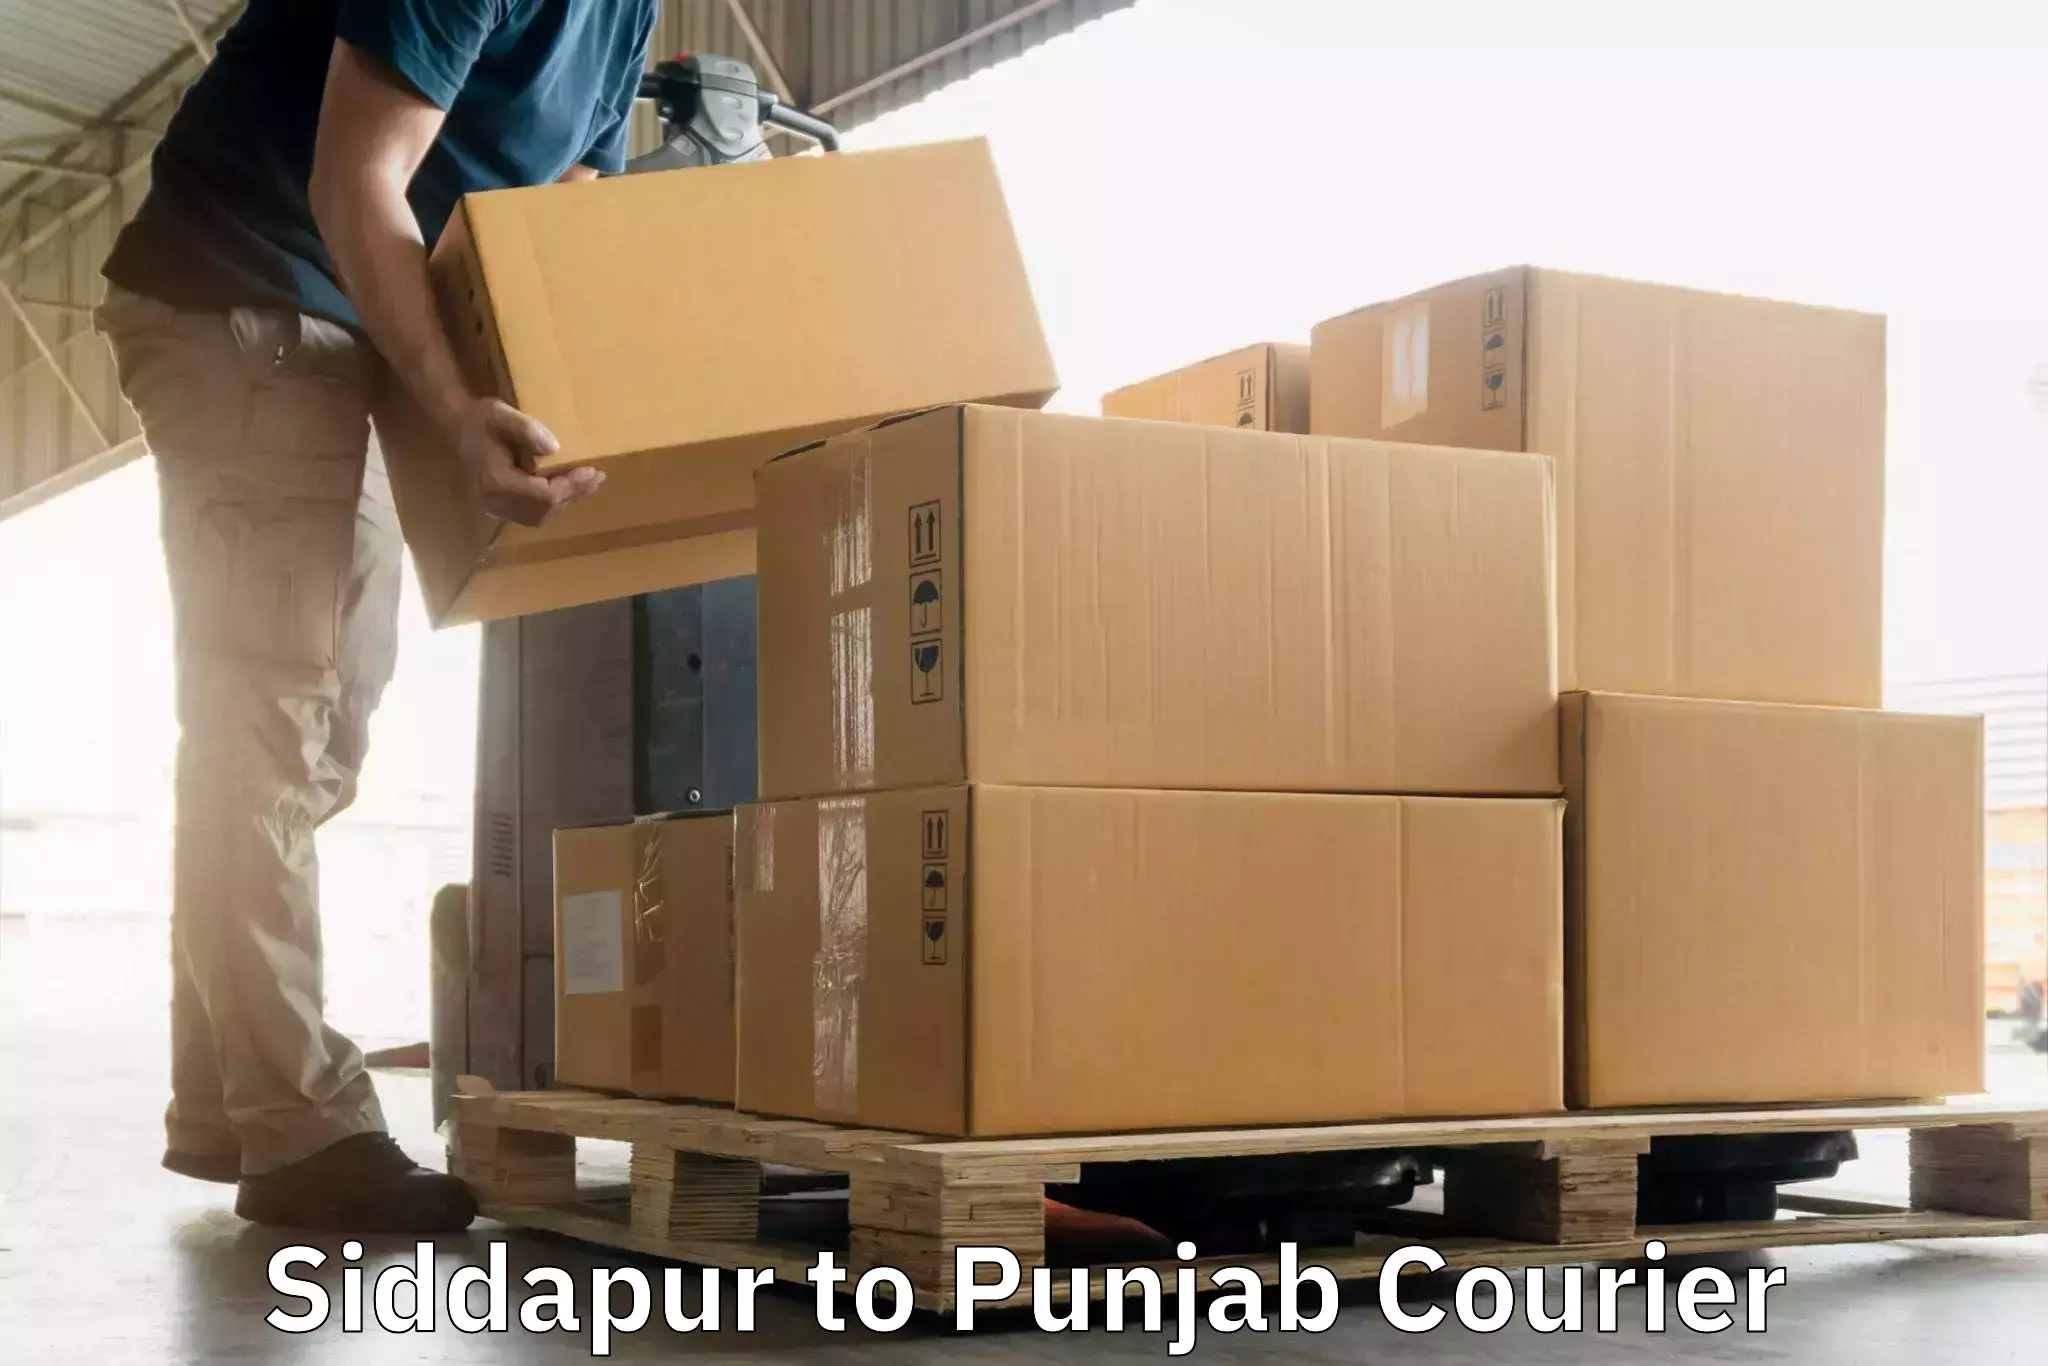 Fragile item shipping Siddapur to Faridkot